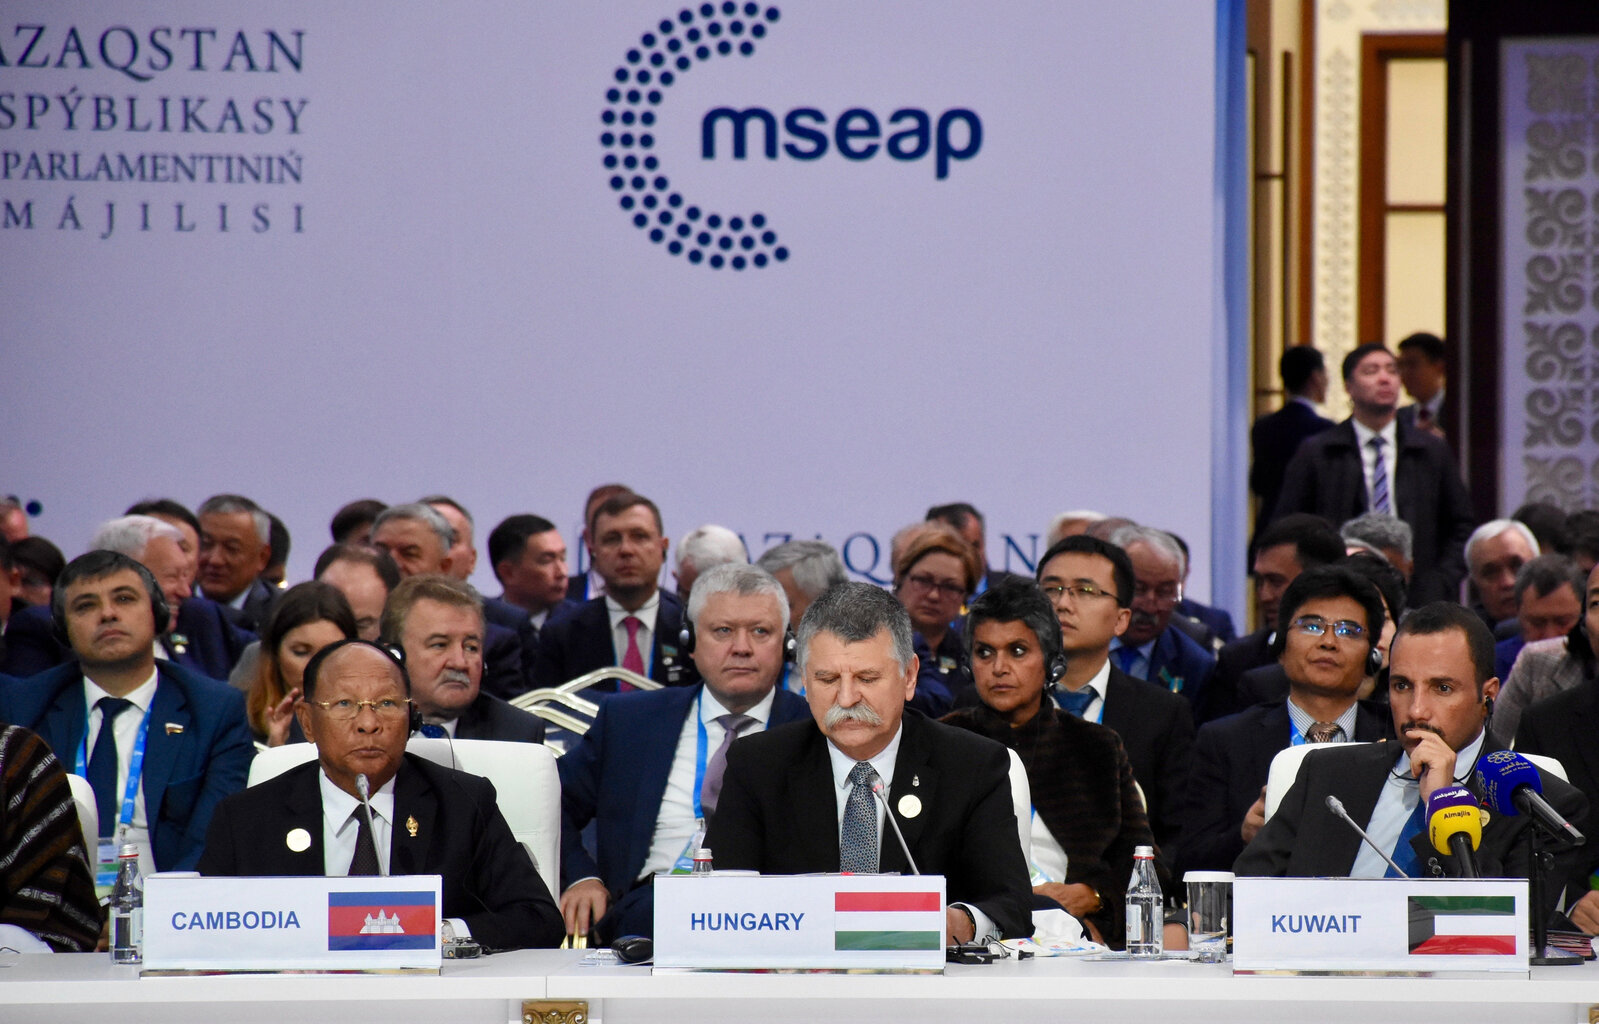 Kövér László, az Országgyűlés elnöke (k) felszólal az Eurázsiai Államok Parlamenti Elnökeinek IV. Találkozóján Kazahsztán fővárosában, Nur-Szultanban 2019. szeptember 24-én. MTI/Országgyűlés Sajtóirodája #moszkvater